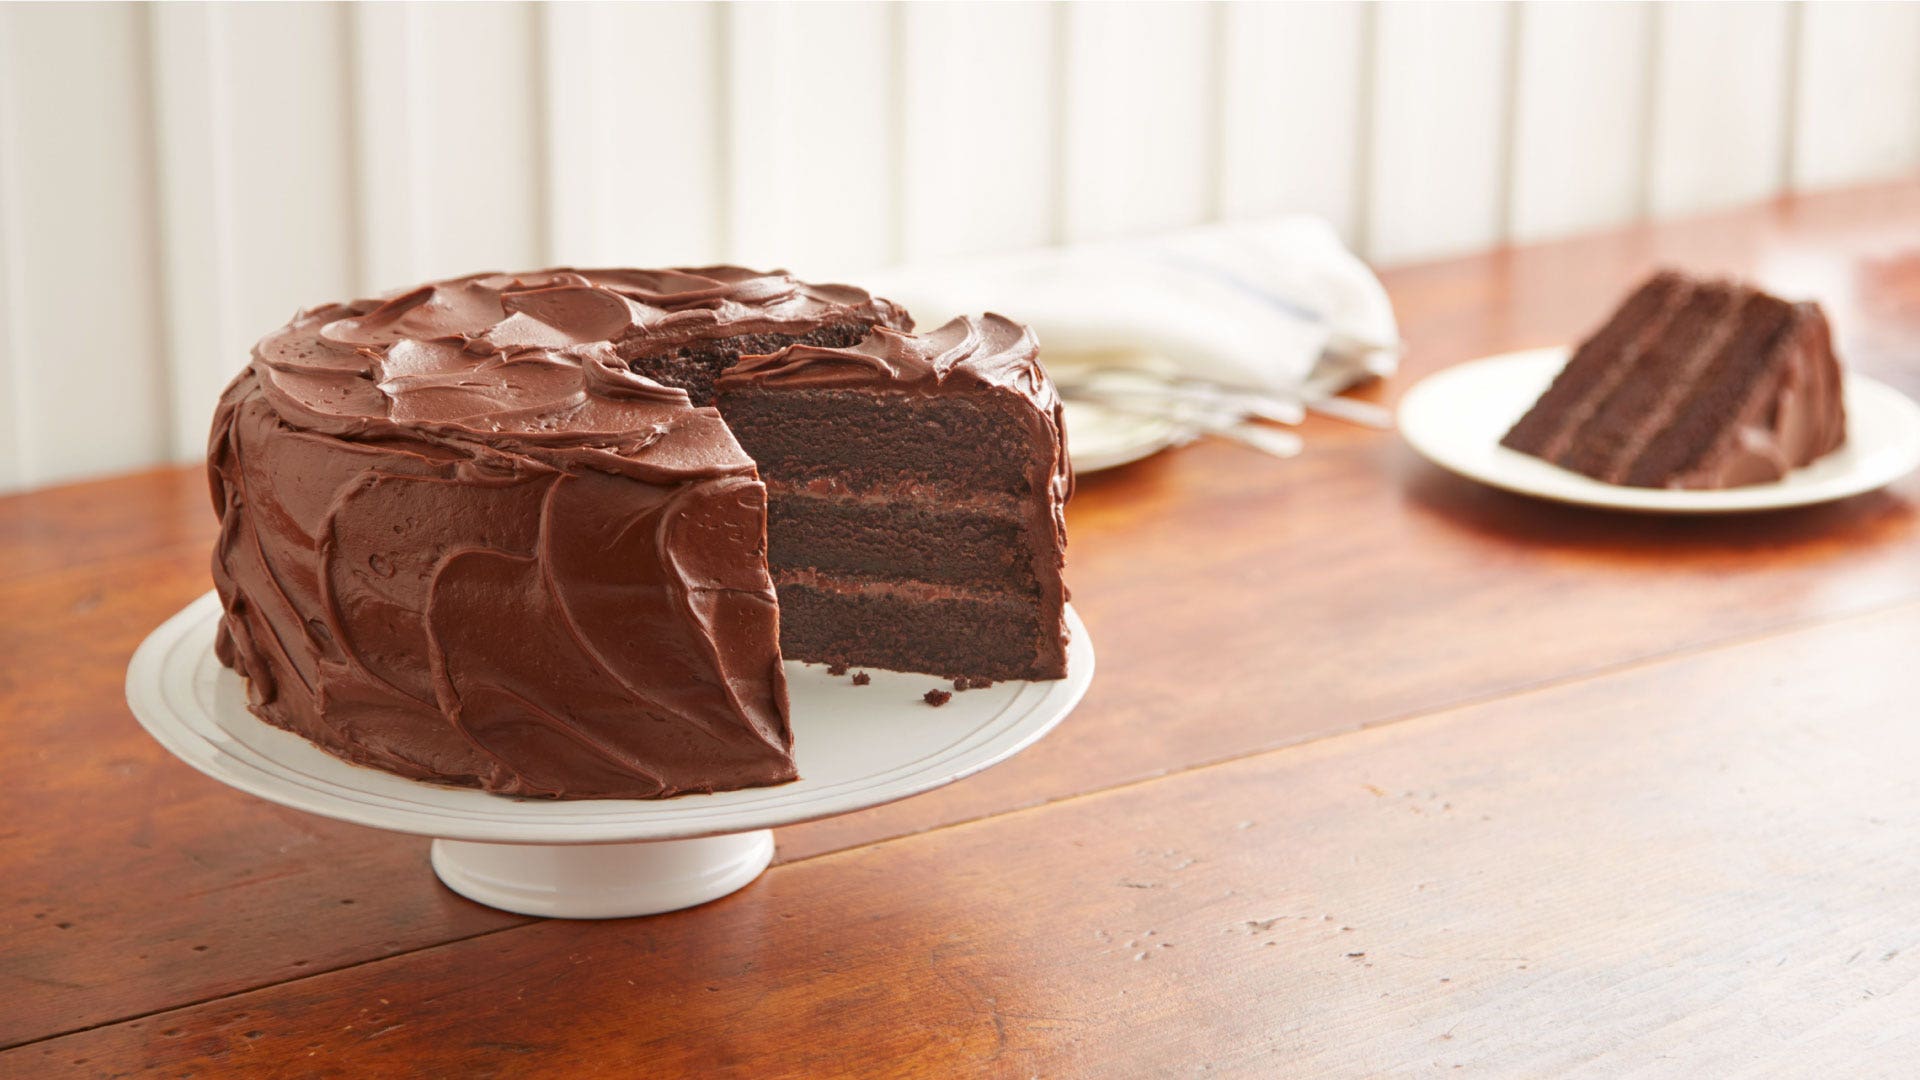 Gluten-Free HERSHEY’S “Perfectly Chocolate” Chocolate Cake